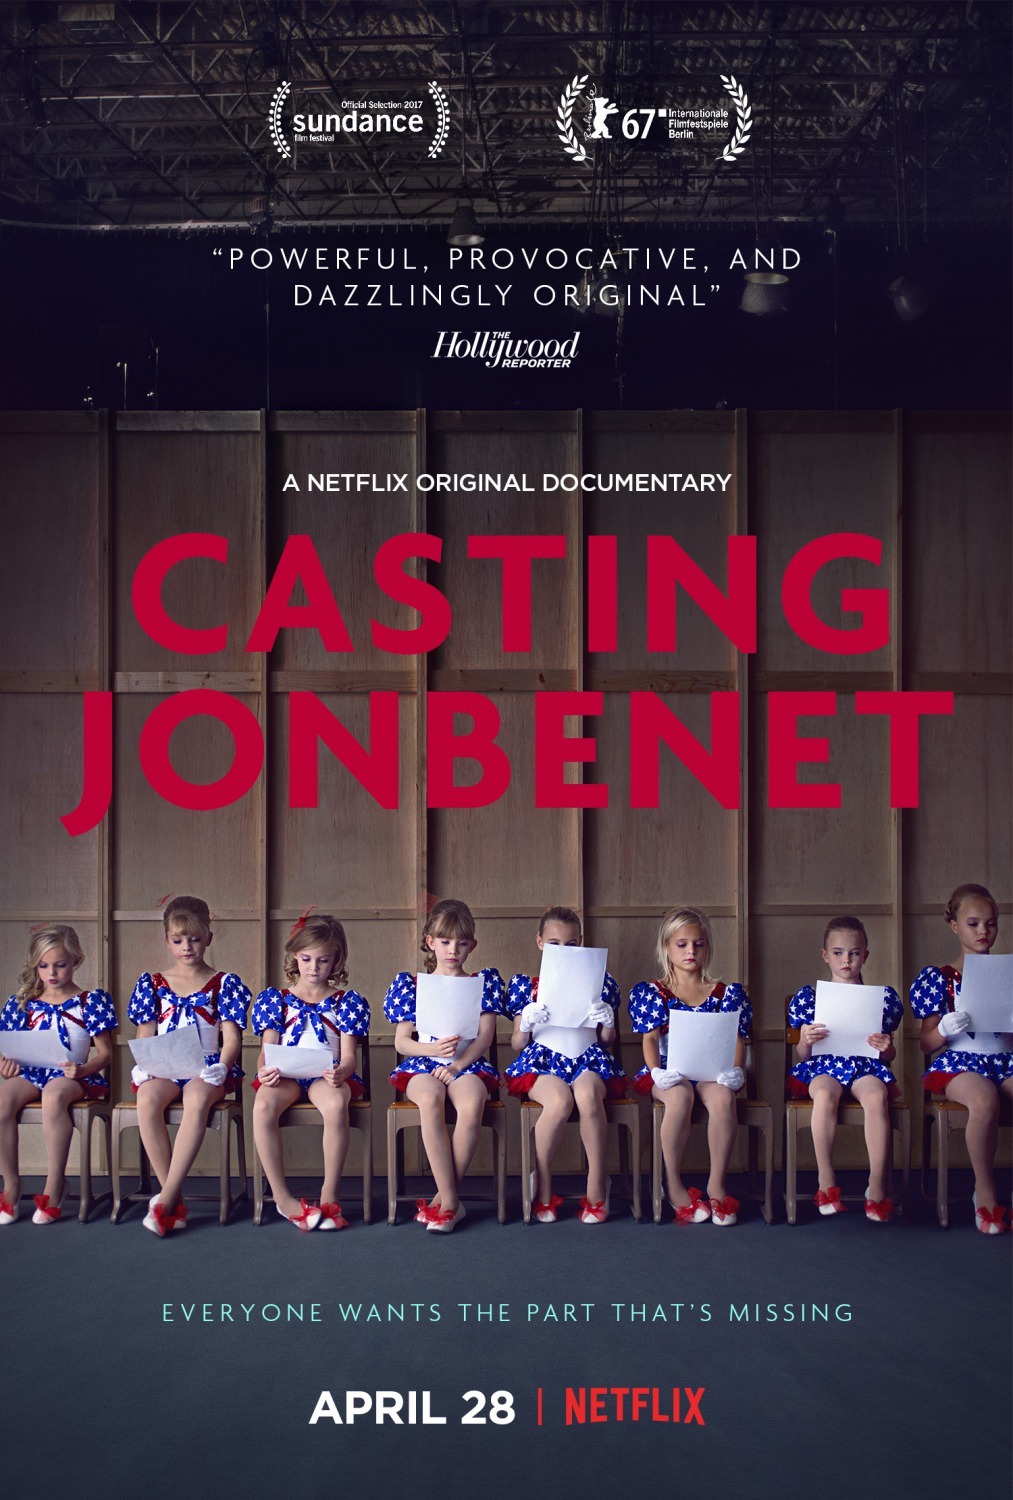 Nonton film Casting JonBenet layarkaca21 indoxx1 ganool online streaming terbaru